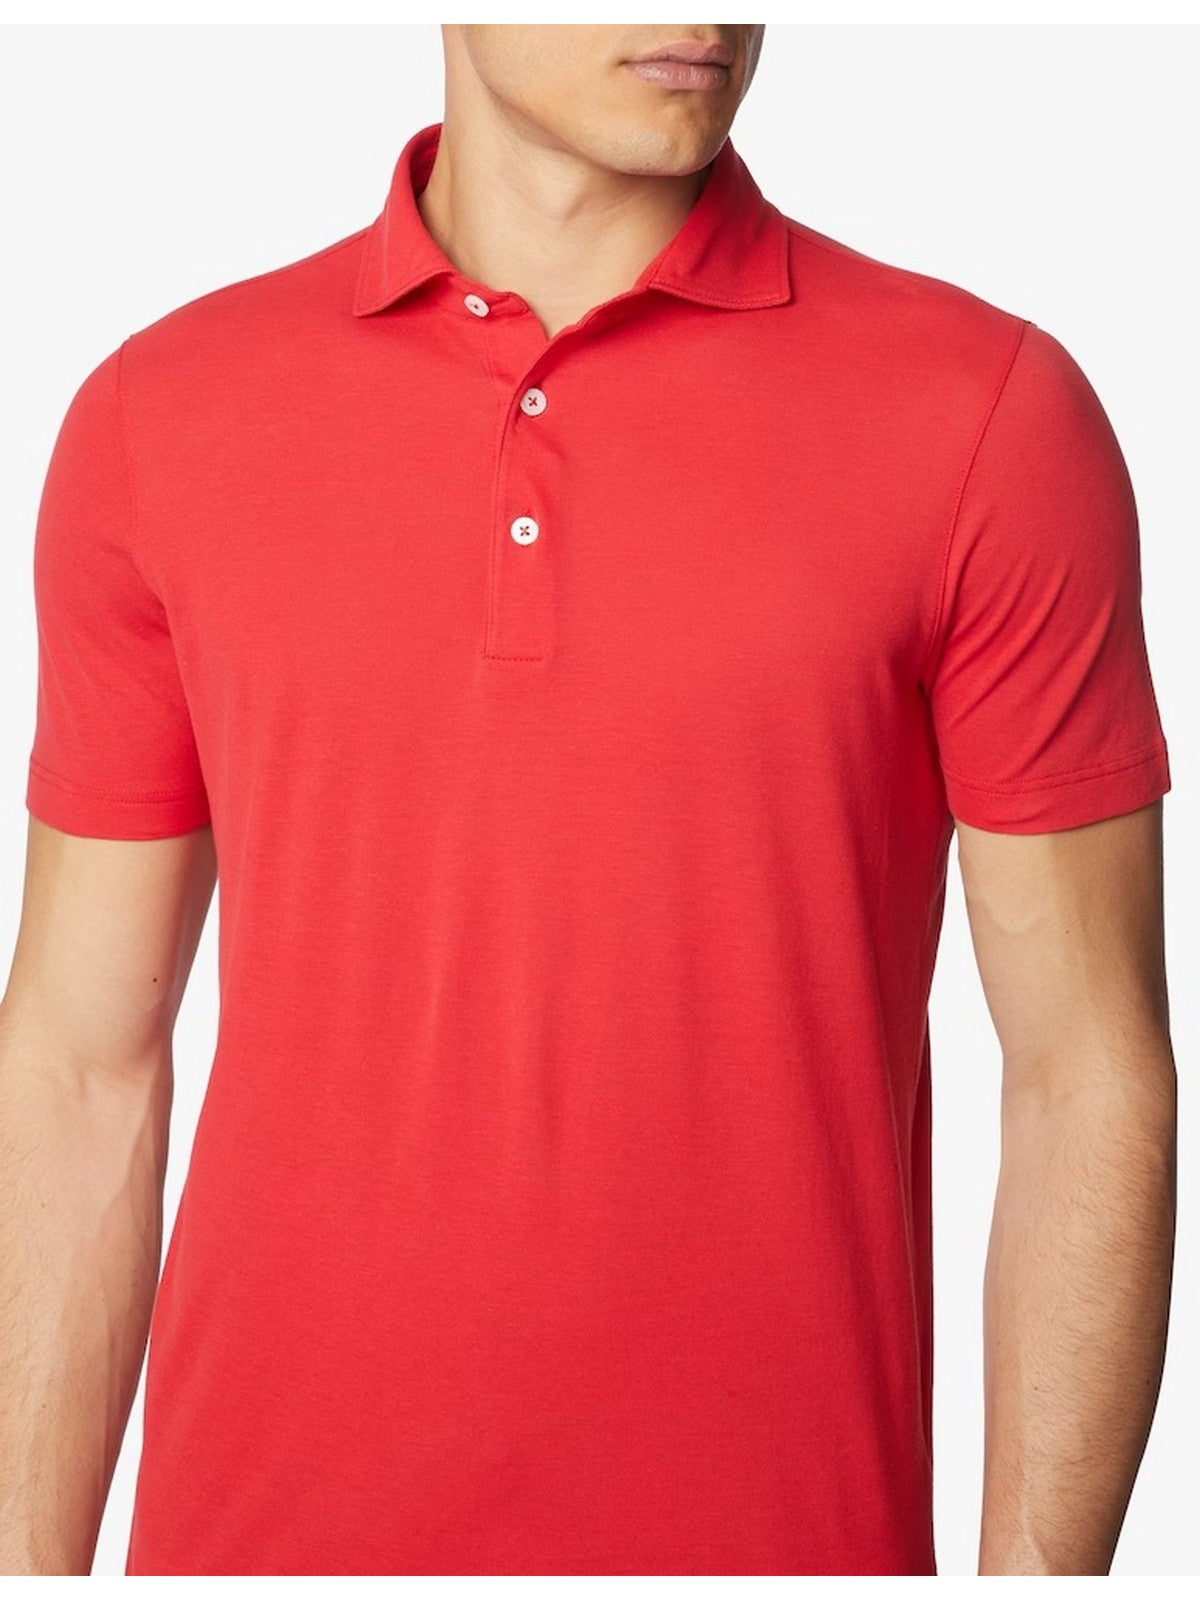 GRAN SASSO T-Shirt e Polo Uomo  60103/81401 255 Rosso